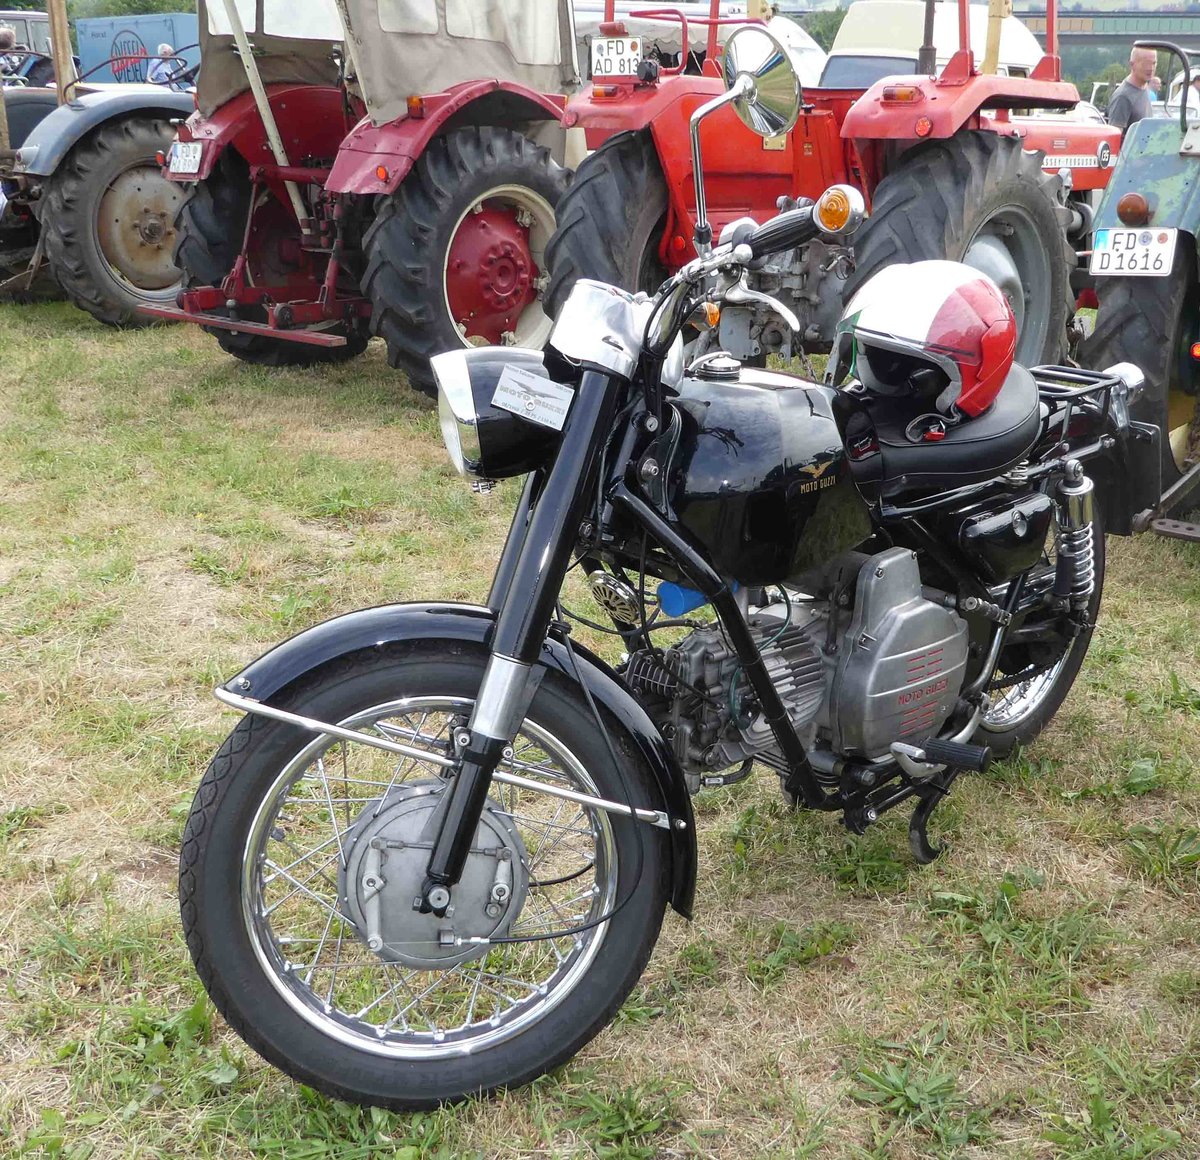 =Moto Guzzi Nuovo Falcone, Bj. 1969, 28 PS, 500 ccm, gesehen bei der Oldtimerausstellung in Uttrichshausen, 07-2019